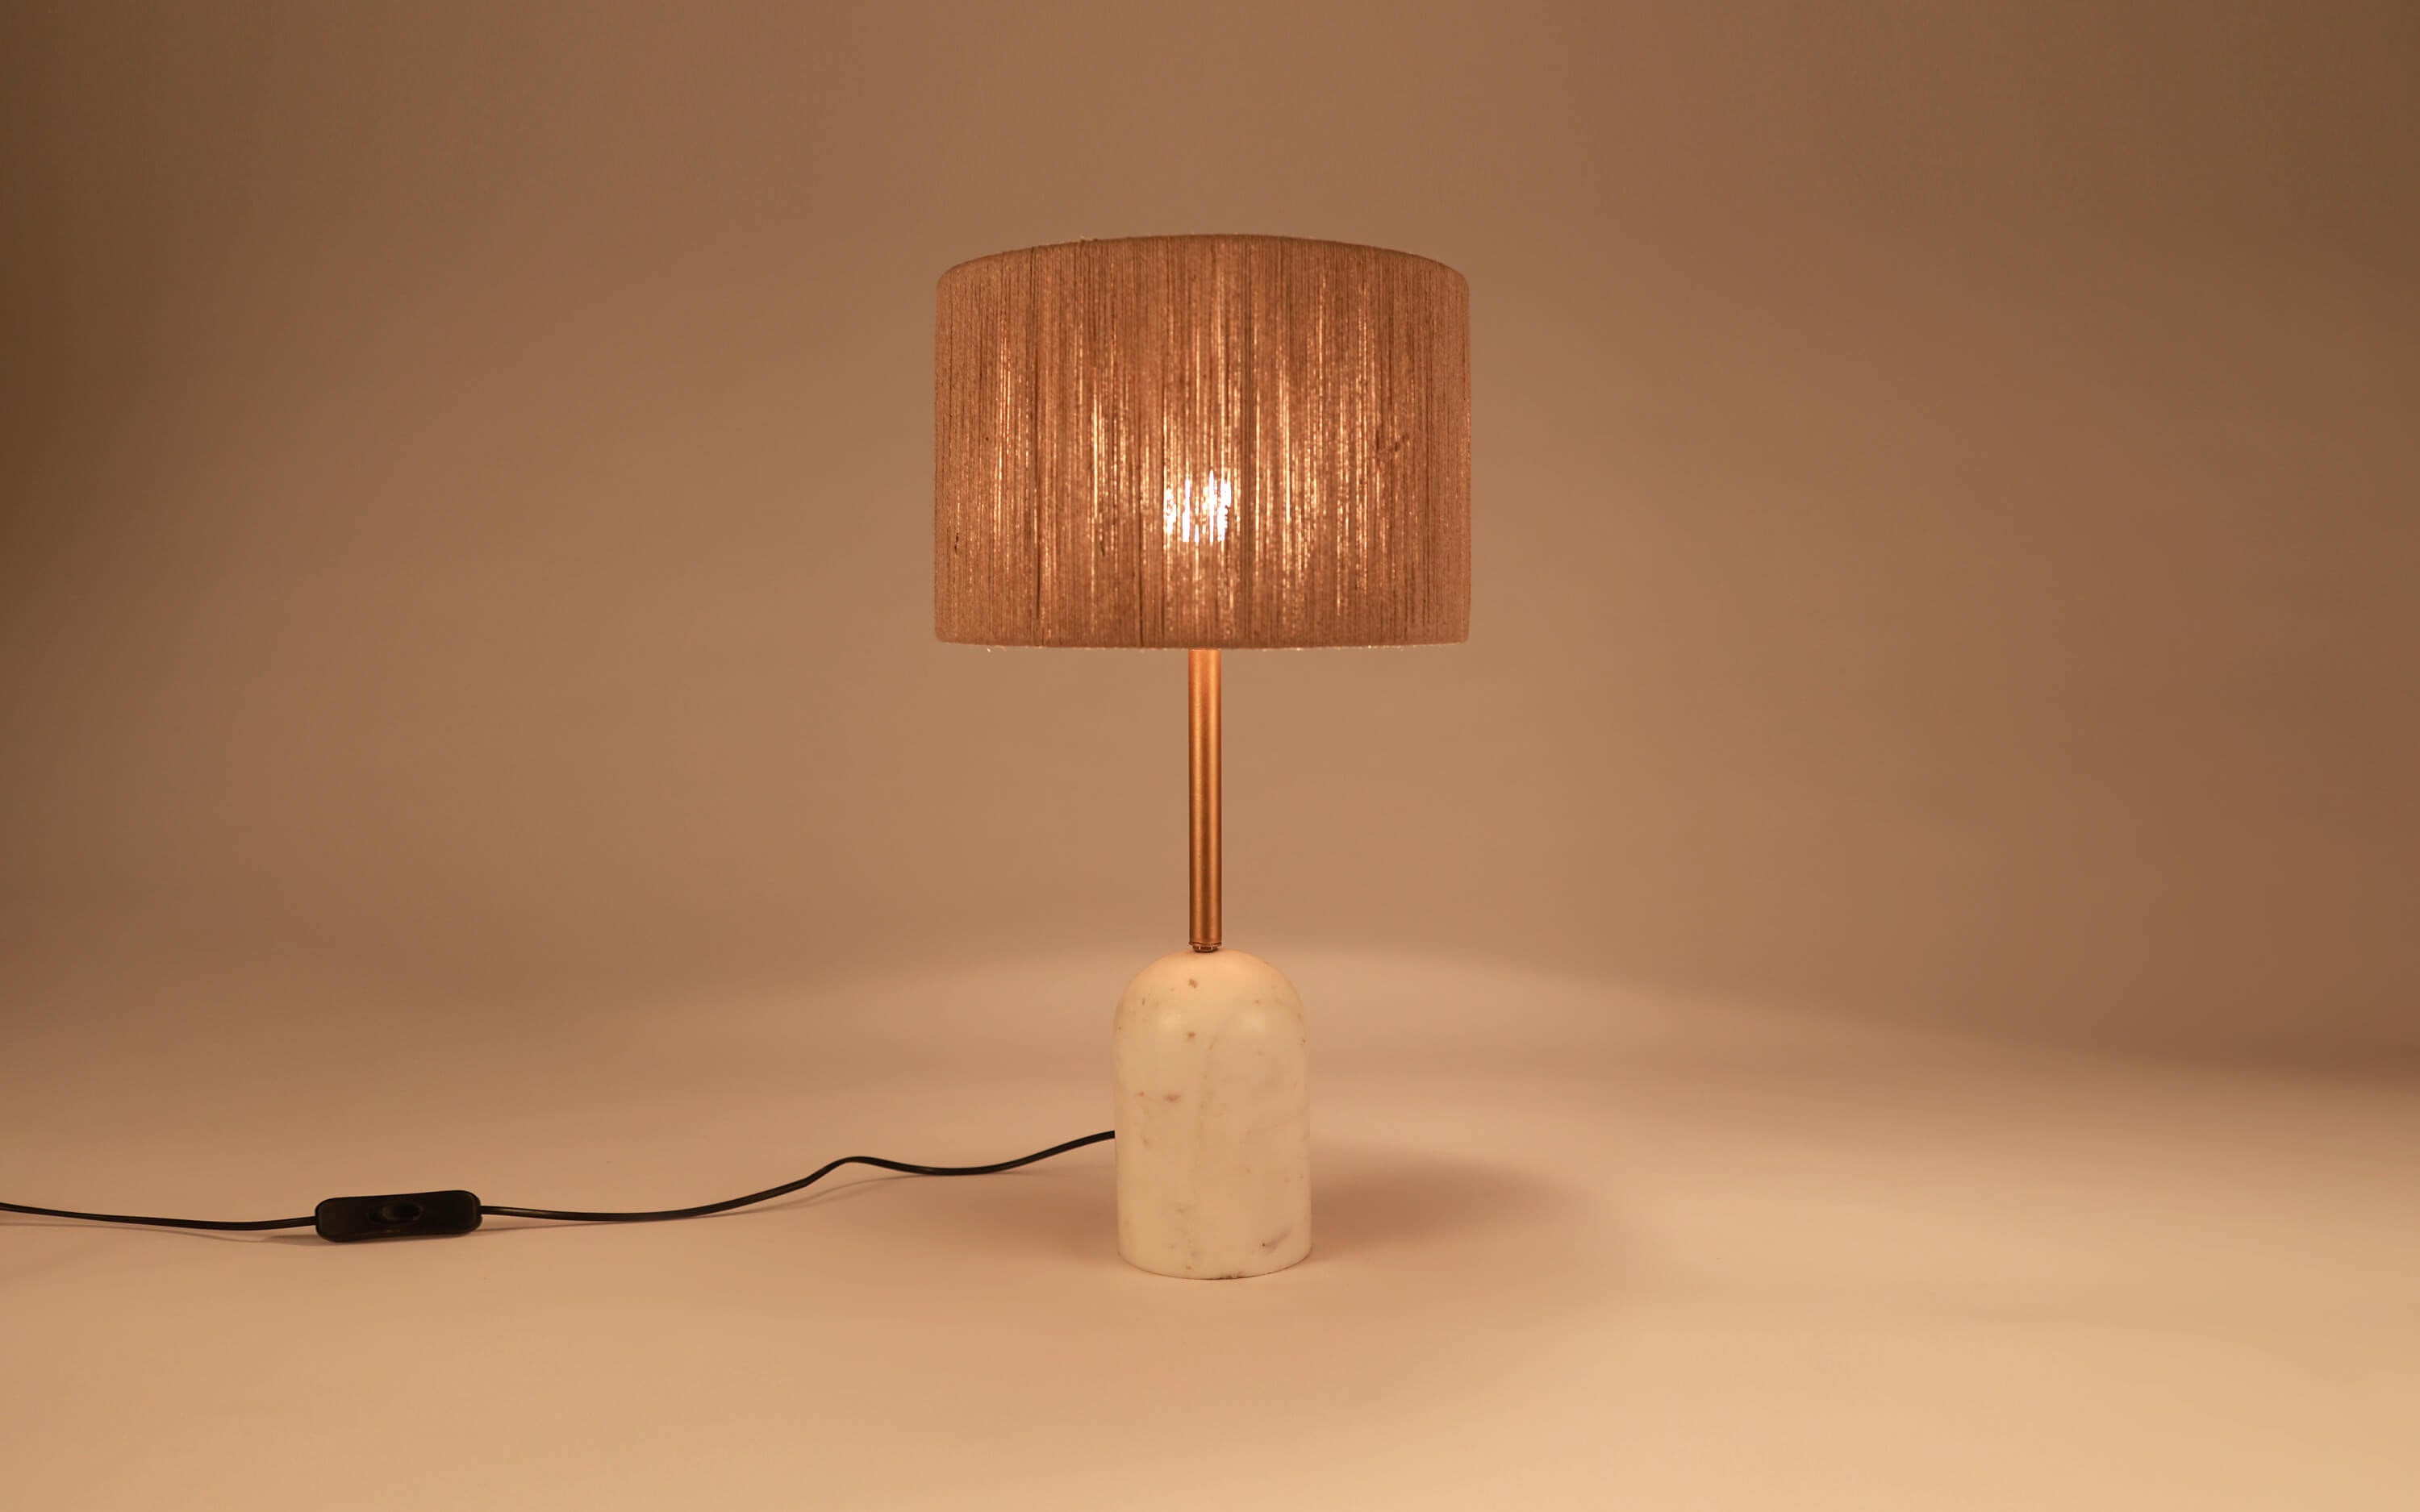 Cusp Sisal Fiber Table Lamp - Orange Tree Home Pvt. Ltd.